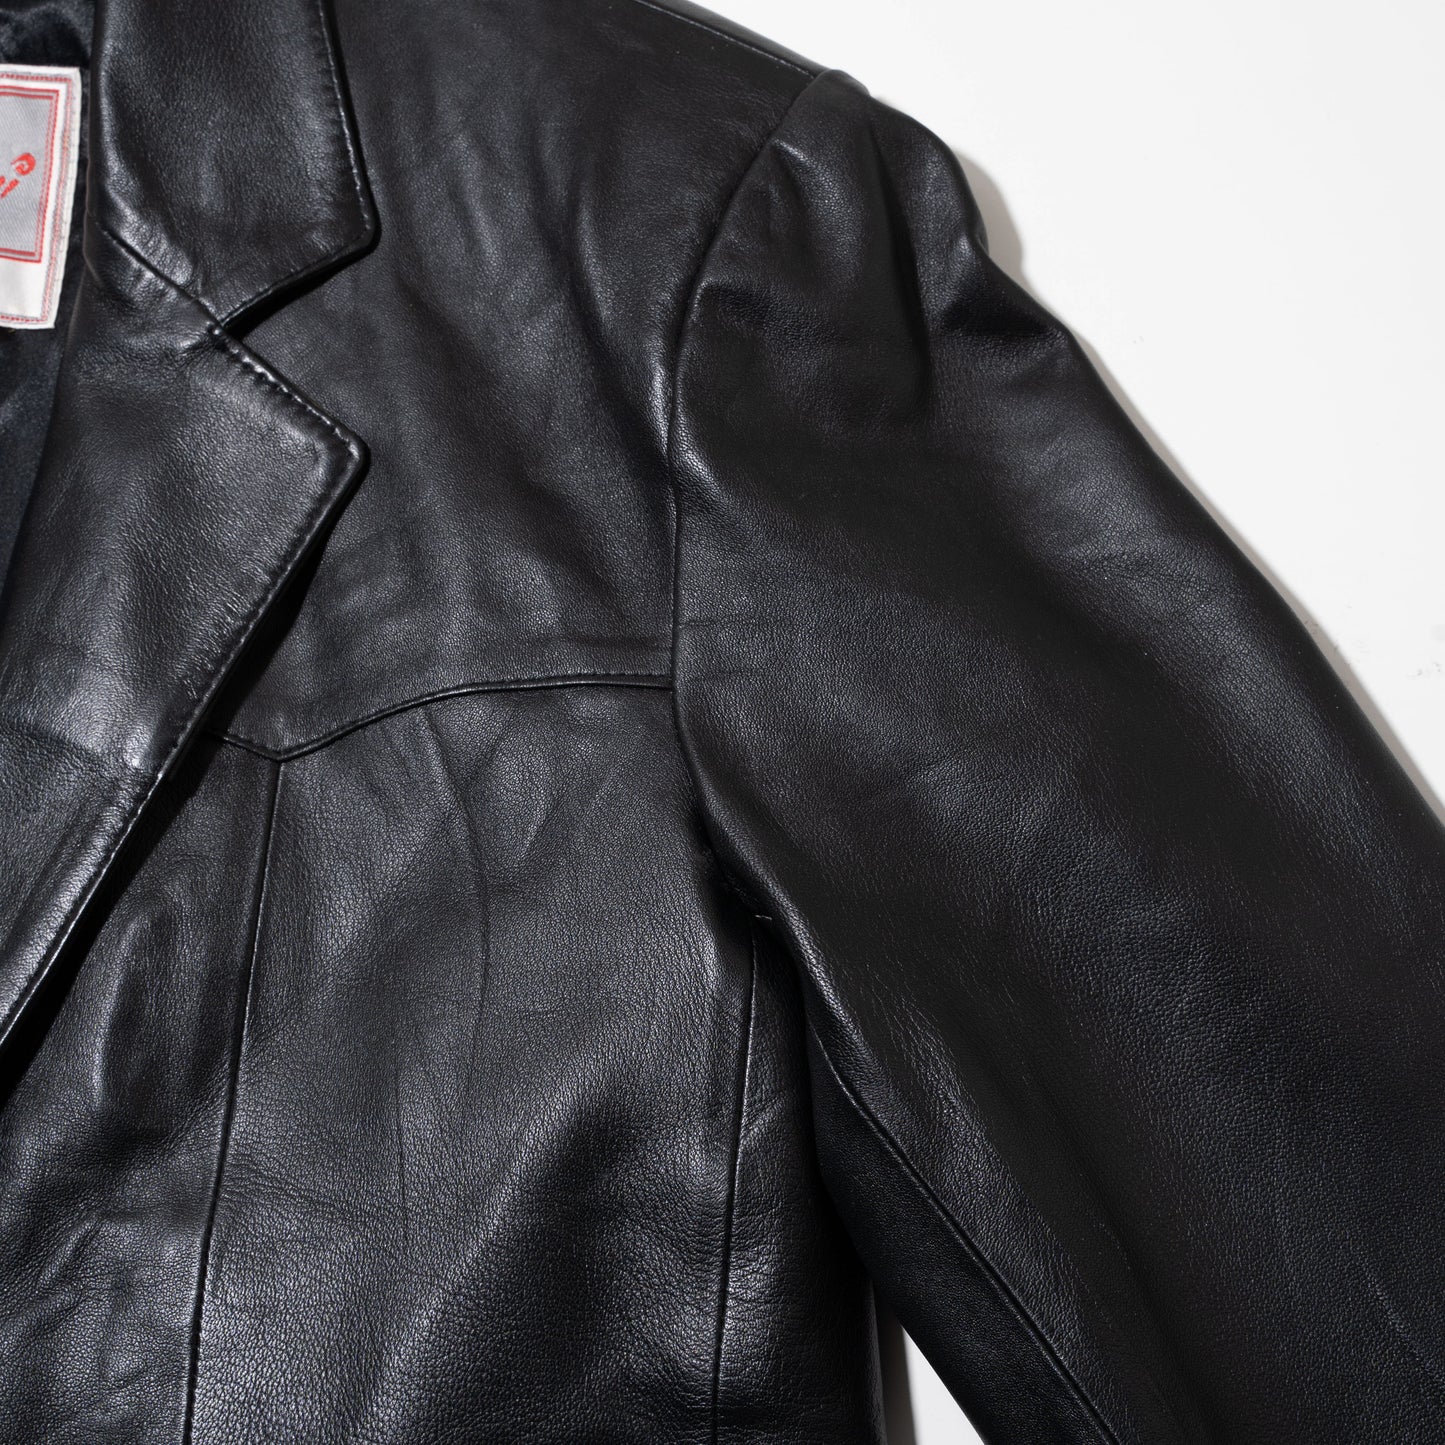 vintage western yoke leather tailored jacket